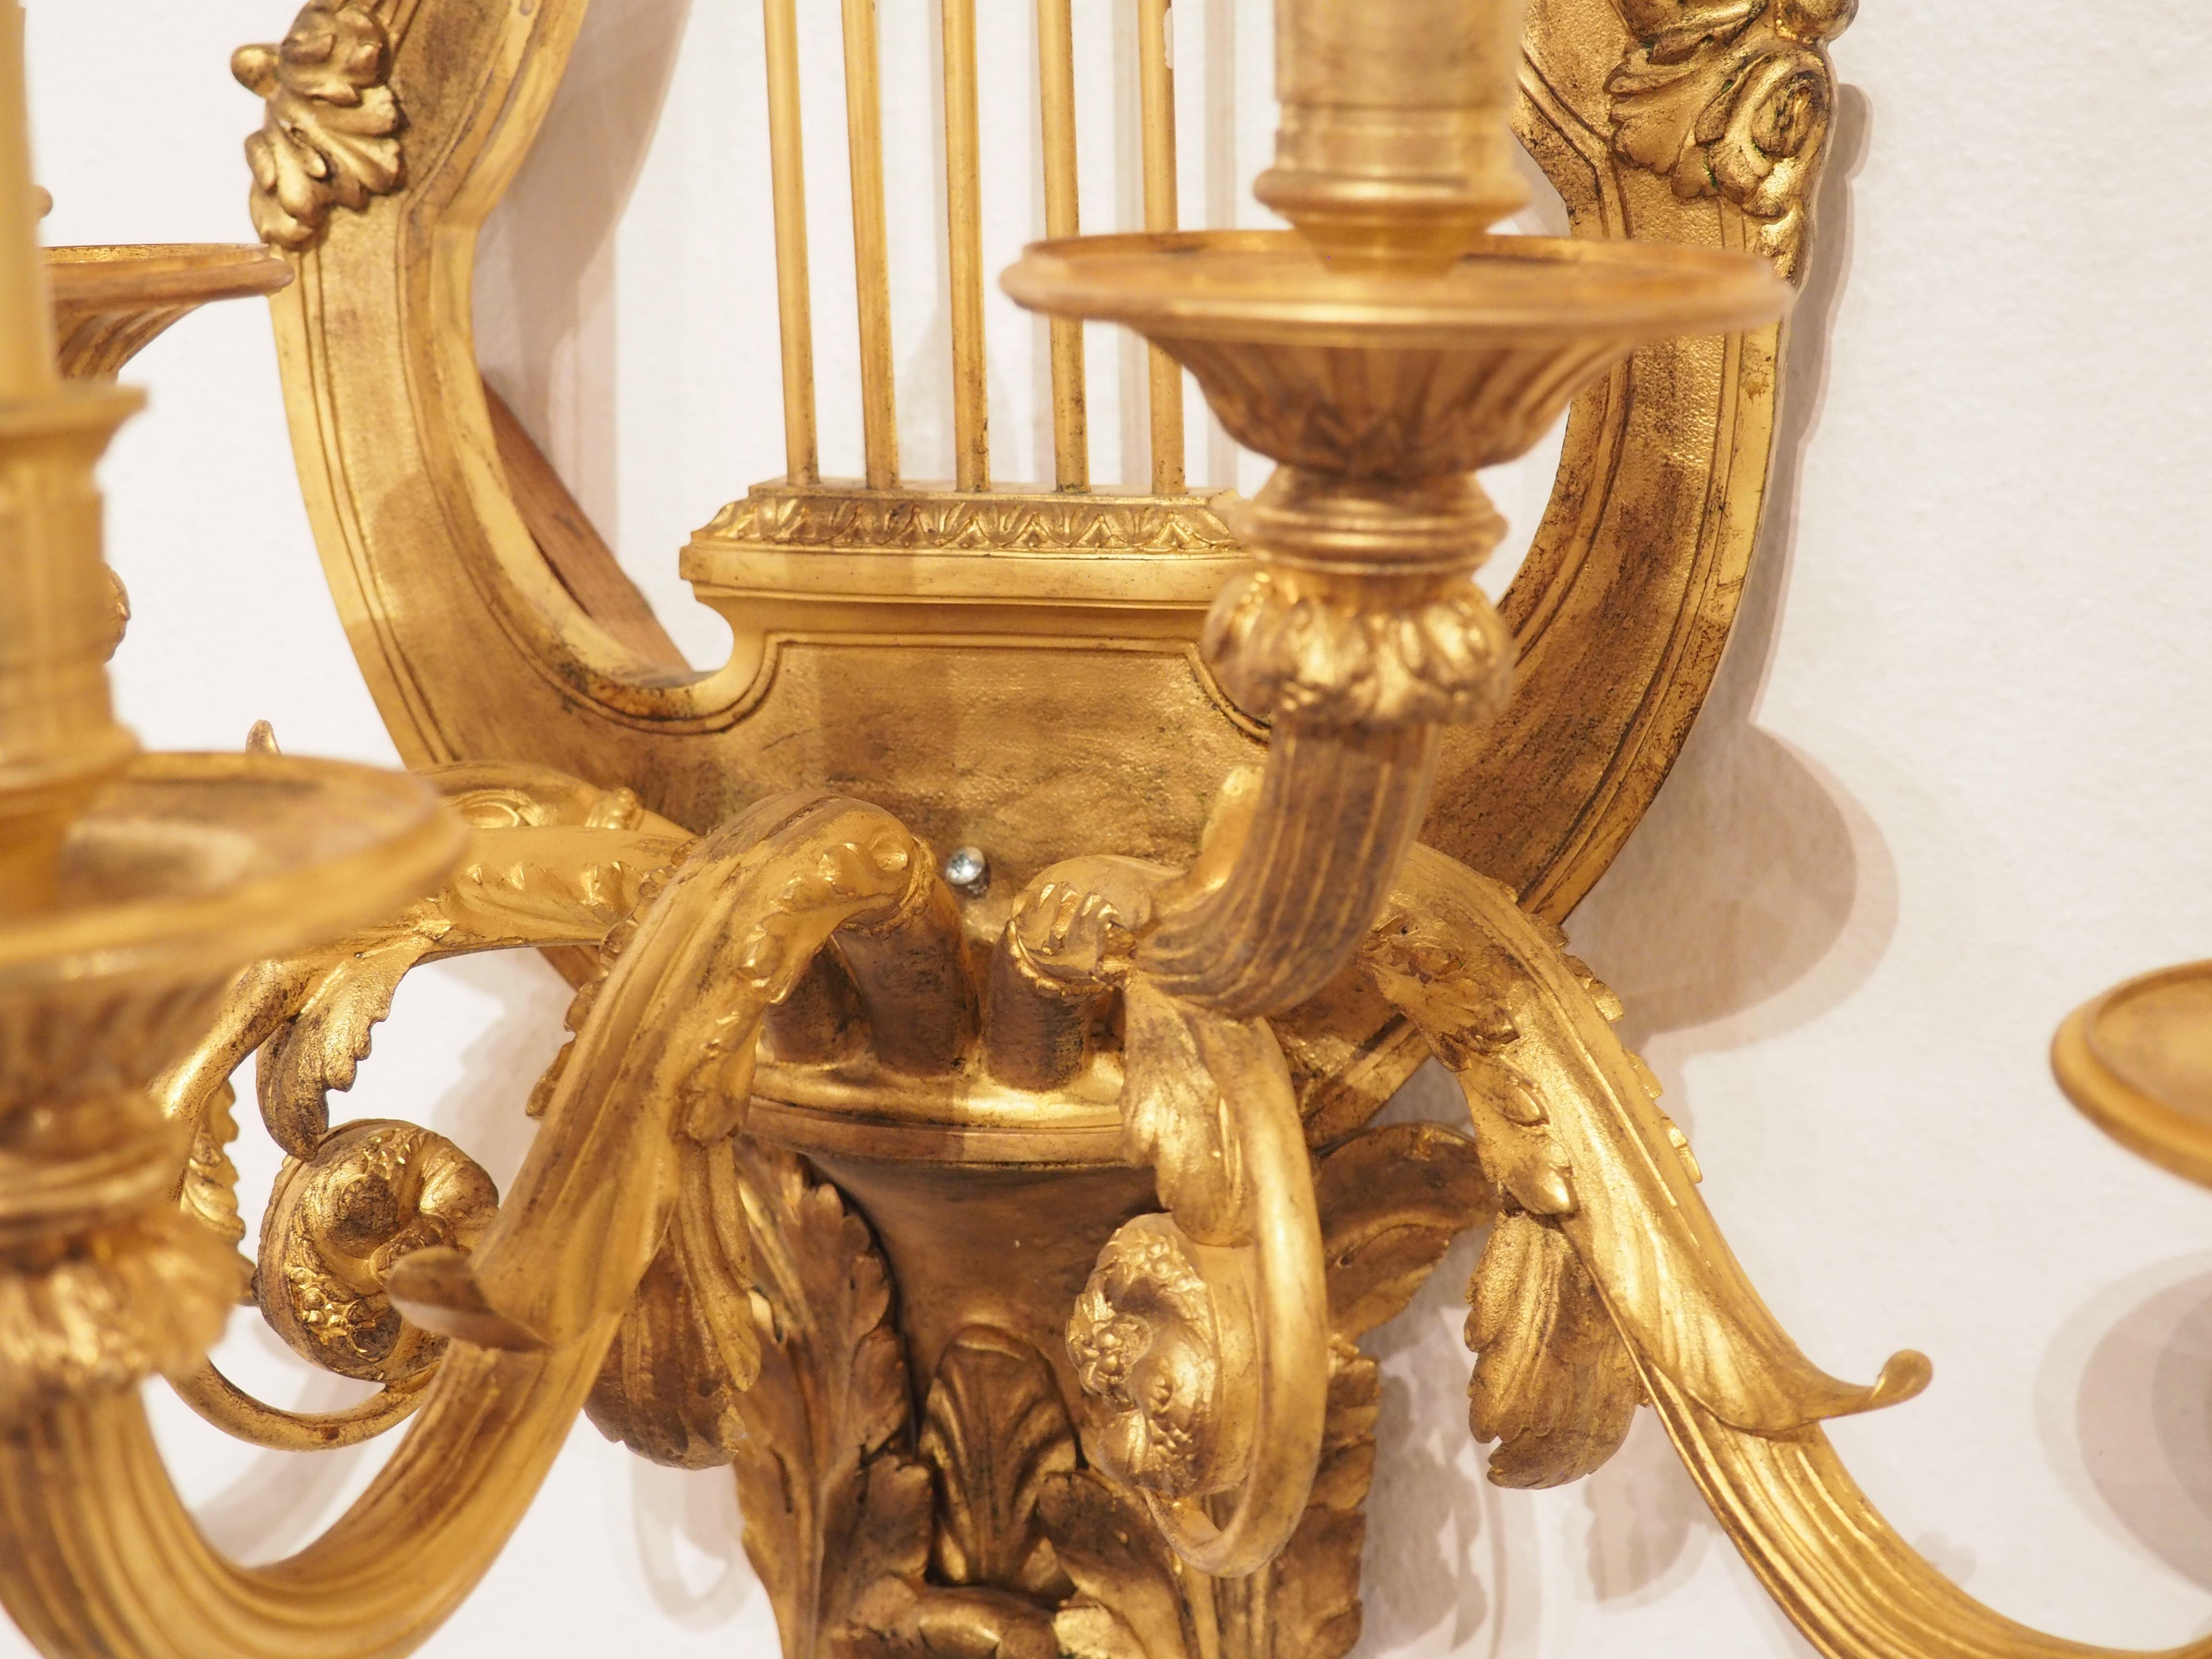 Dieses große Paar Wandleuchten ist aus vergoldeter Bronze und stammt aus dem späten 19.  Das Design der Leuchter entspricht dem Geschmack Ludwigs XVI., wie der leierförmige Korpus, die gebundenen Schleifen und die eleganten Proportionen zeigen.  In